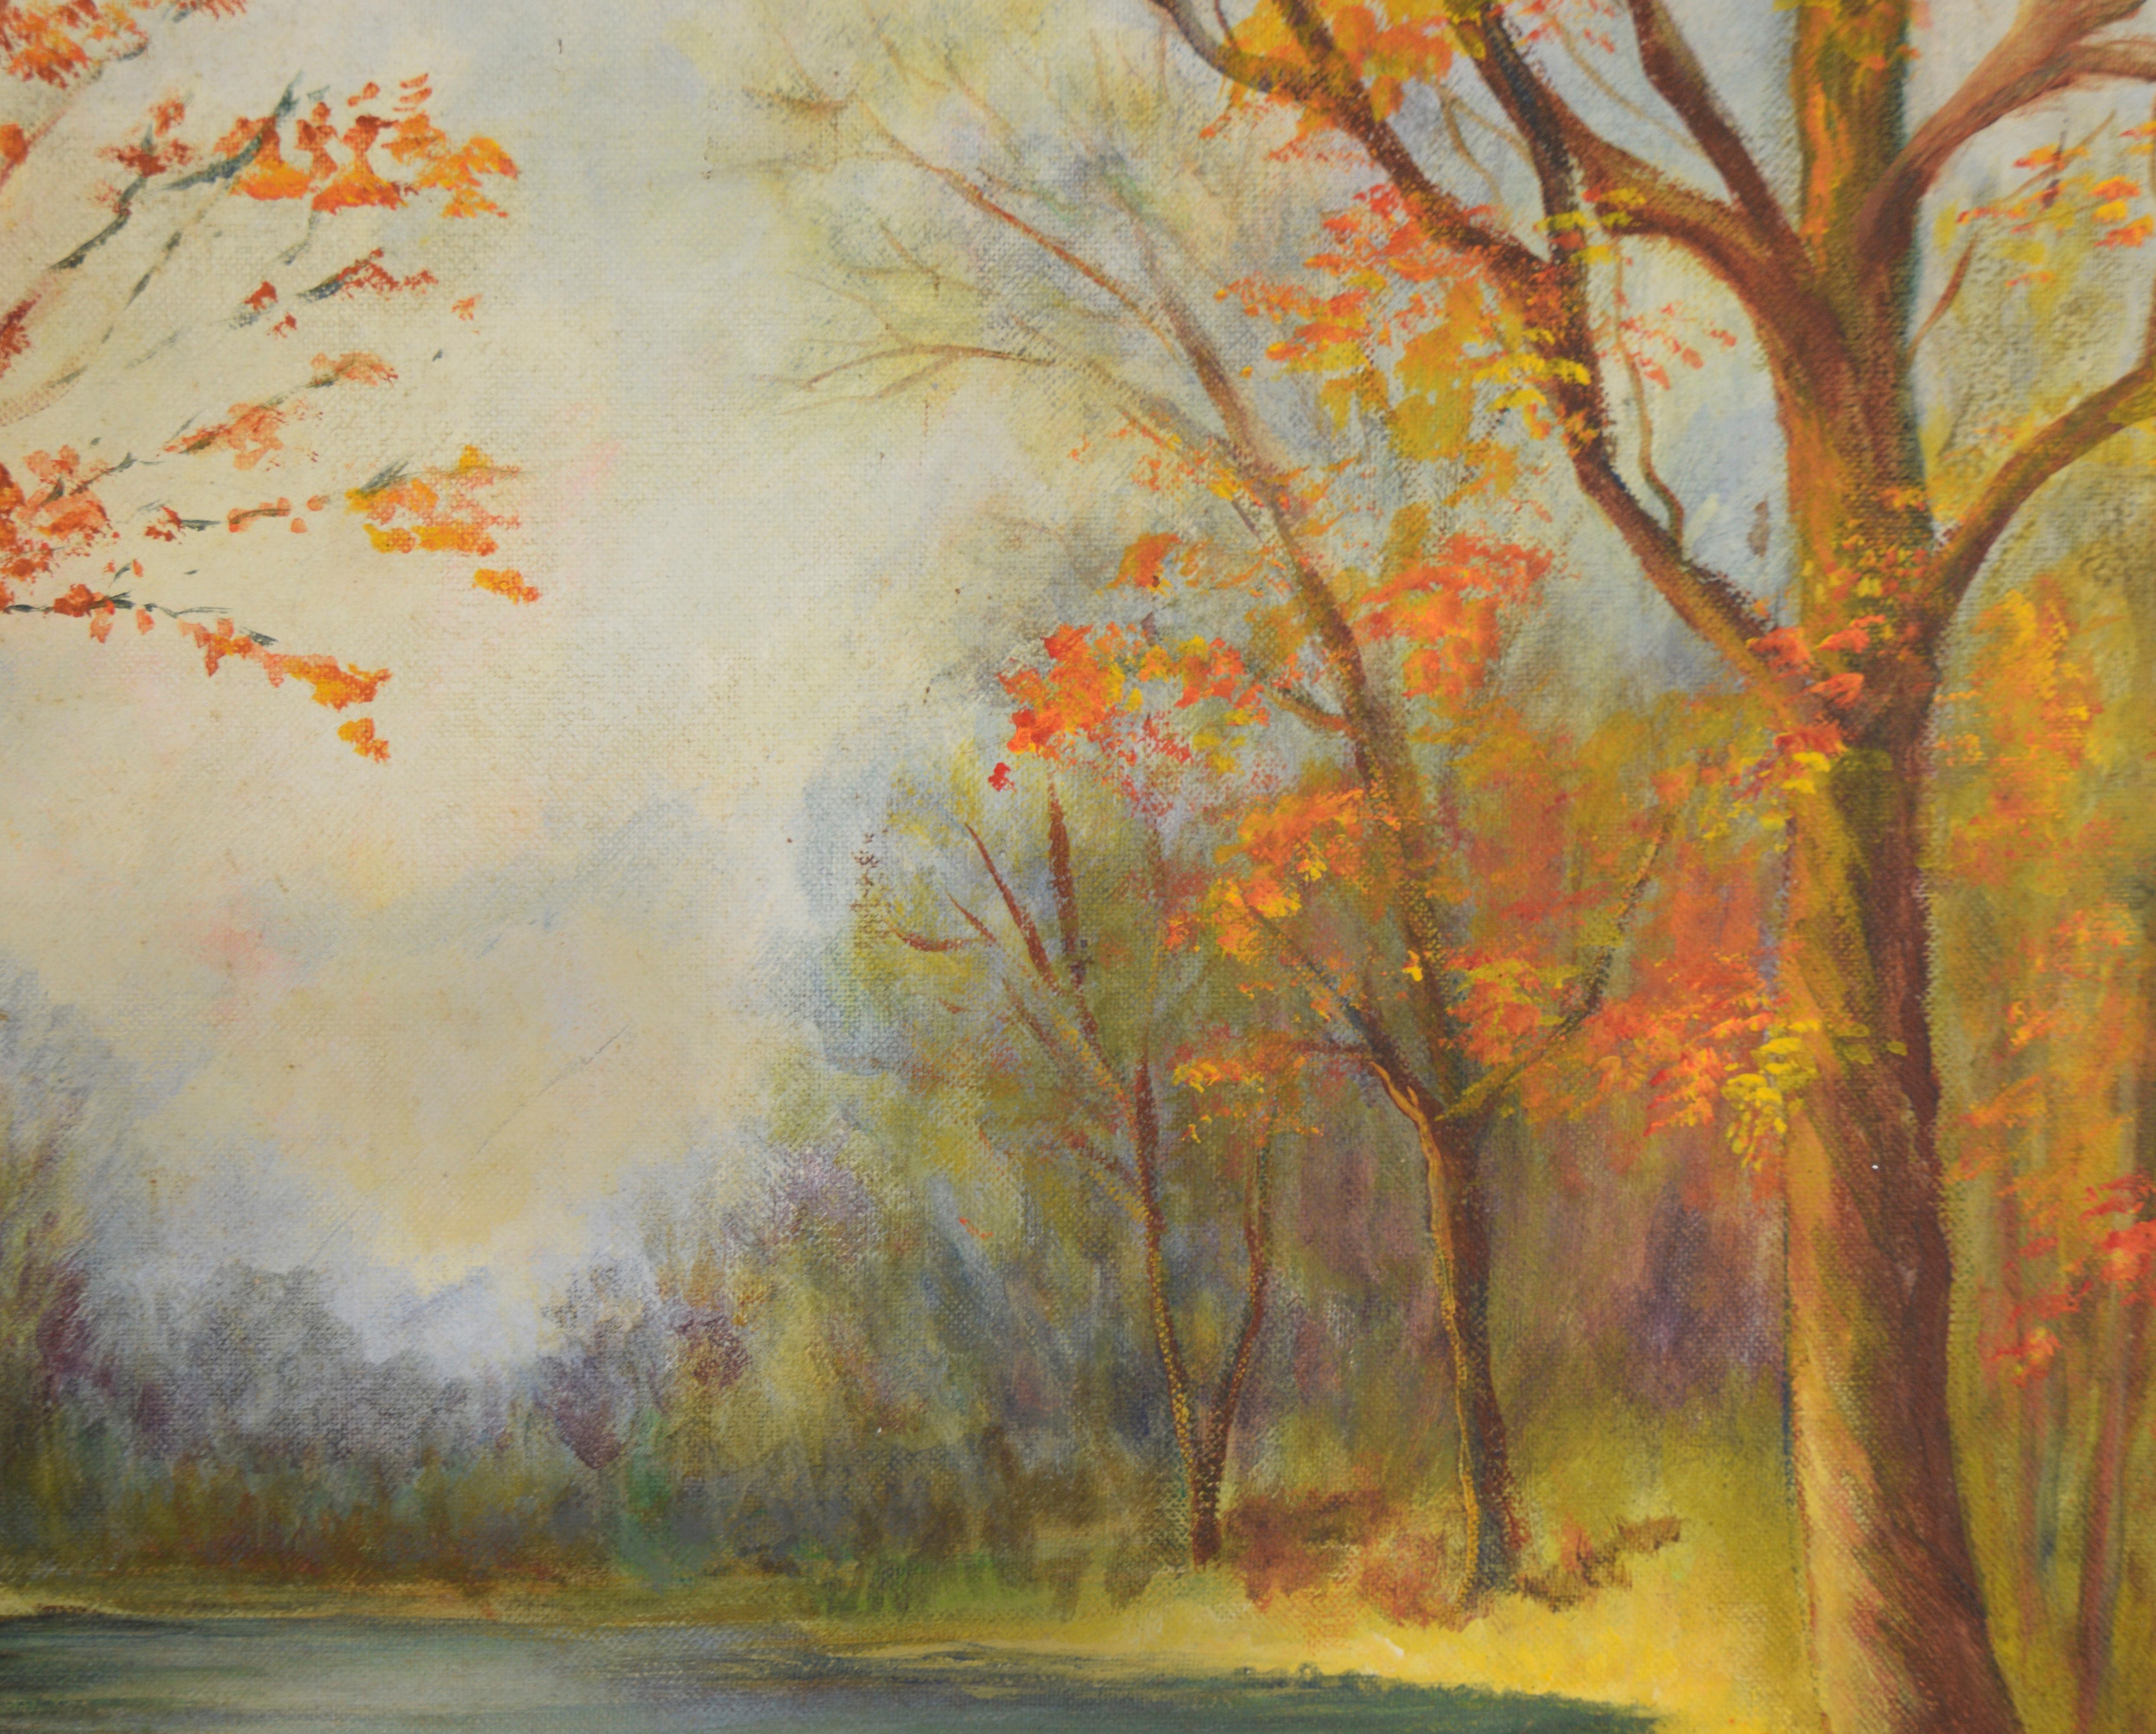 Herbst Stream - Original 1973 Öl-Landschaft

Original impressionistisches Ölgemälde von Jean Kenning aus dem Jahr 1973, das einen ruhigen Bach im Herbstwald darstellt  (England/Kanada, 1916-2004).  Jean war eine anerkannte Künstlerin aus British